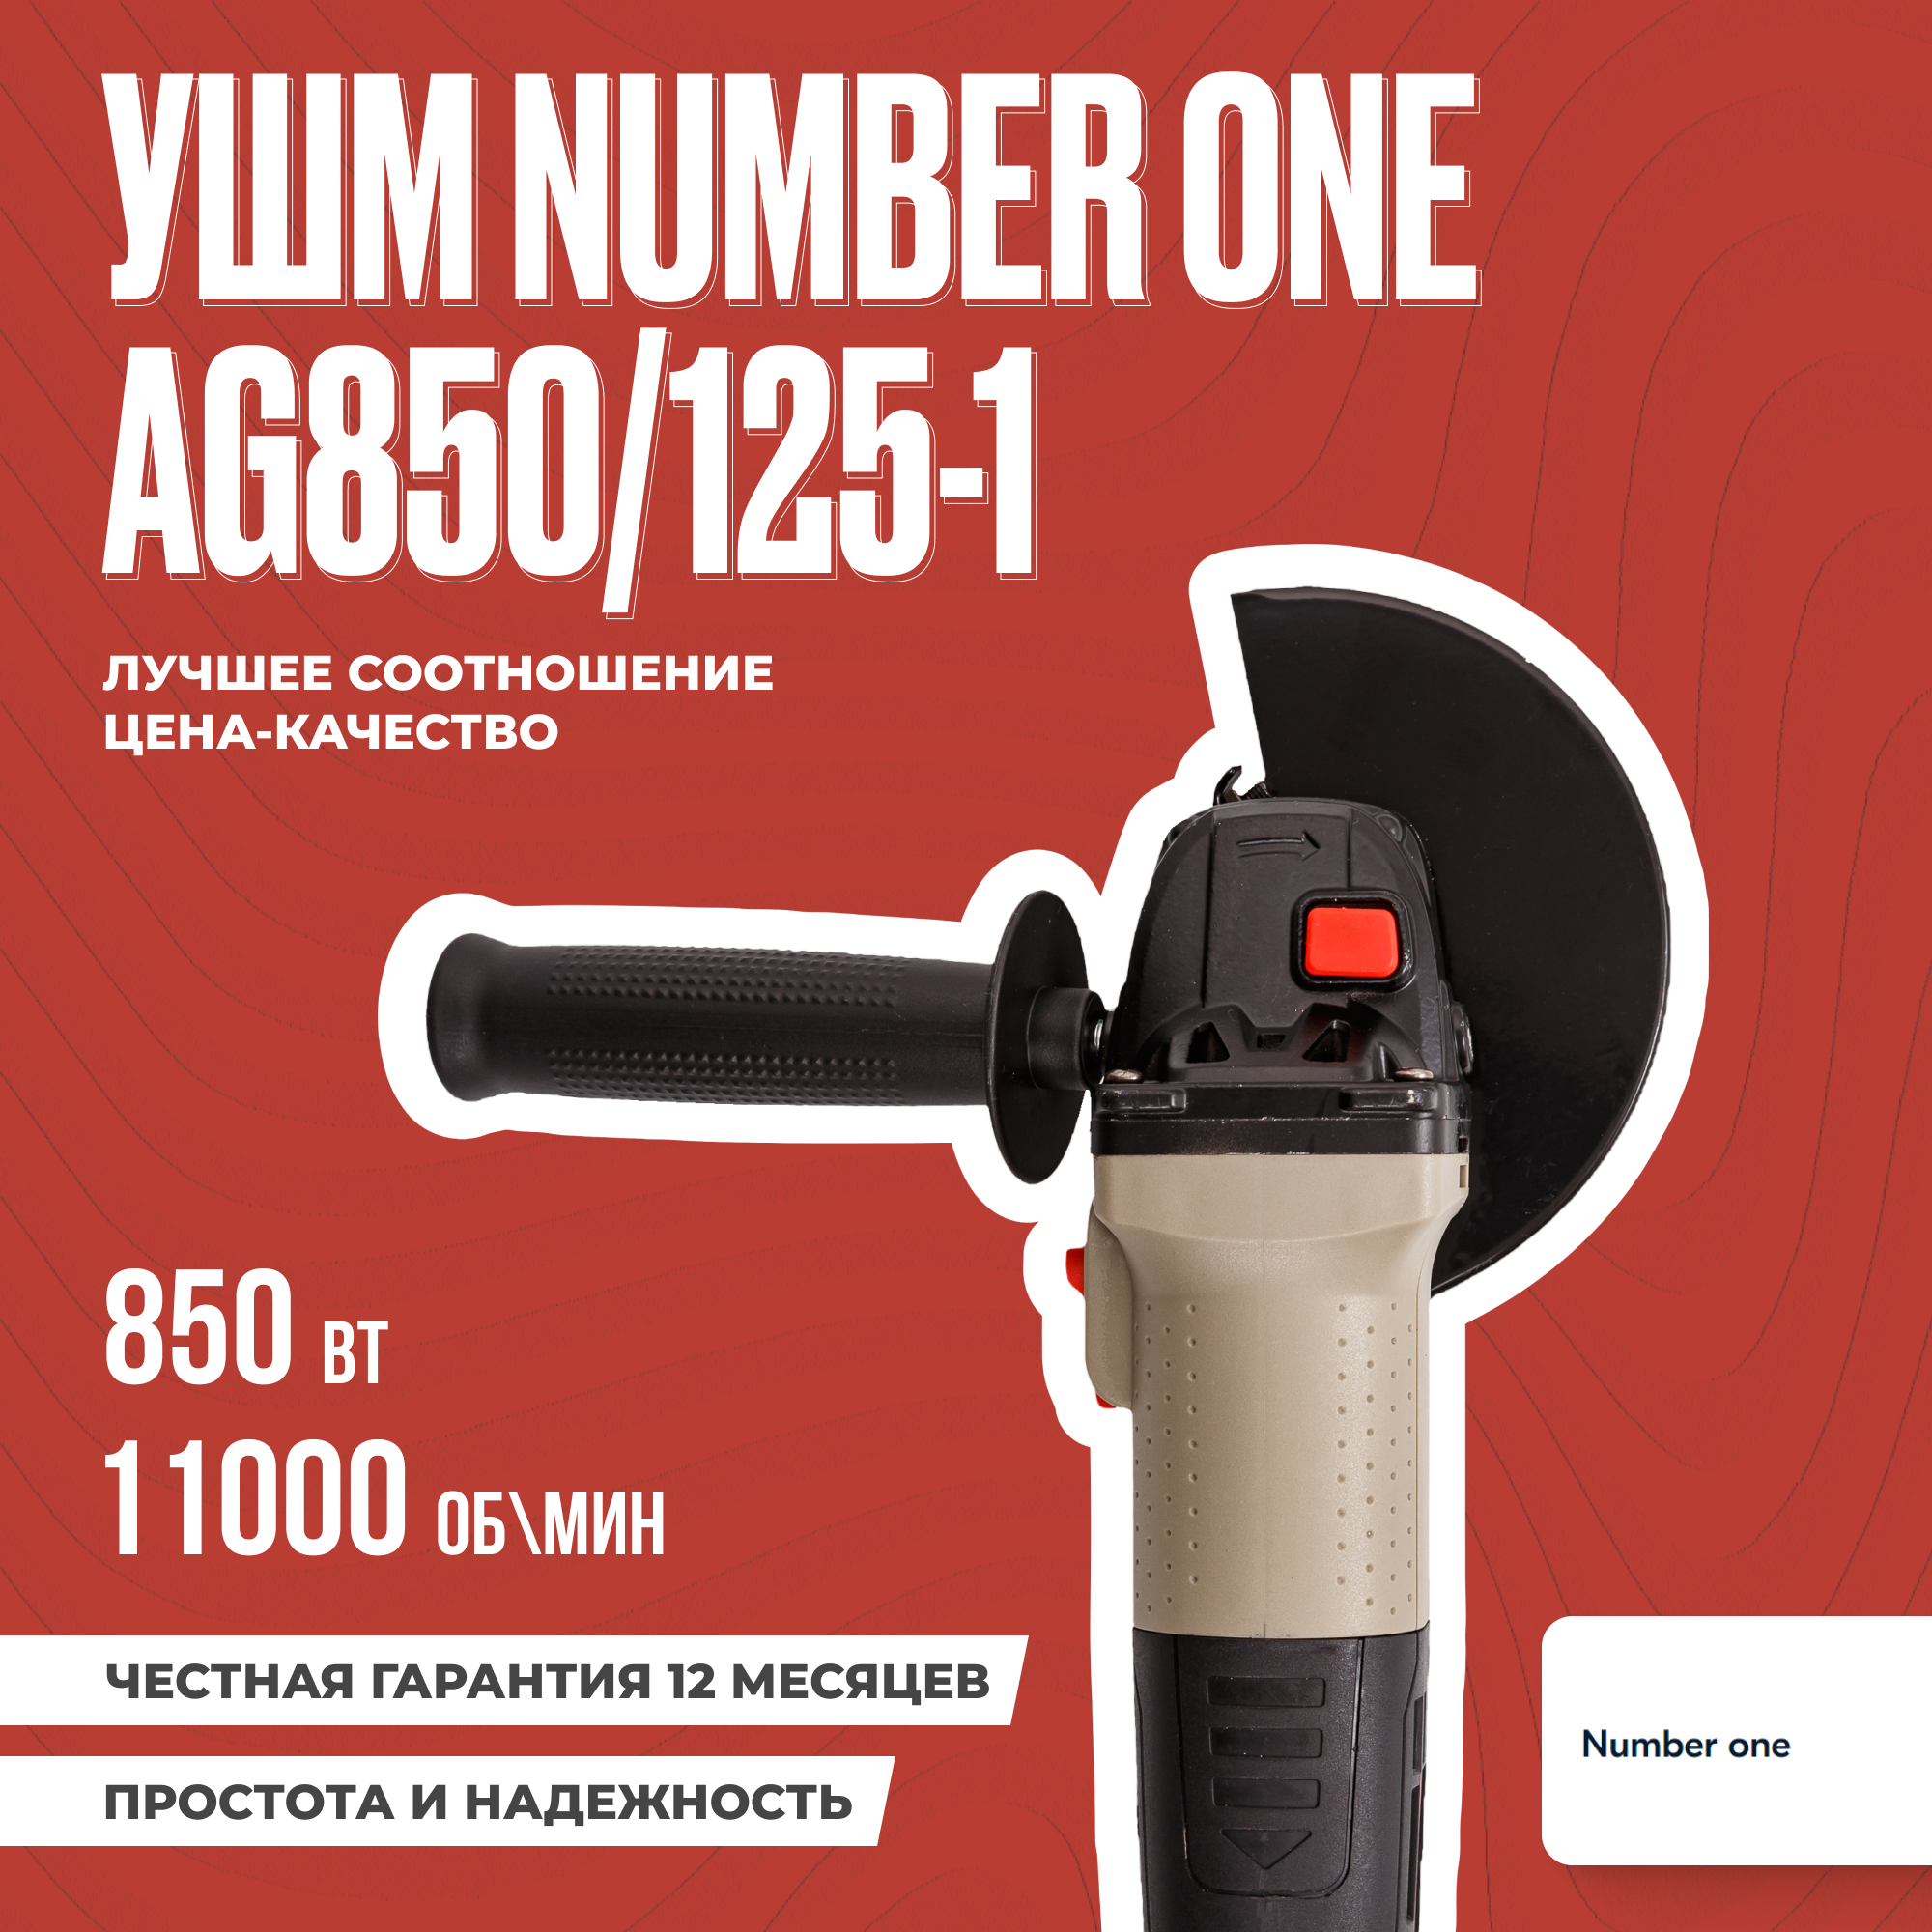 УШМ NUMBER ONE AG850/125-1 850 Вт 125 мм